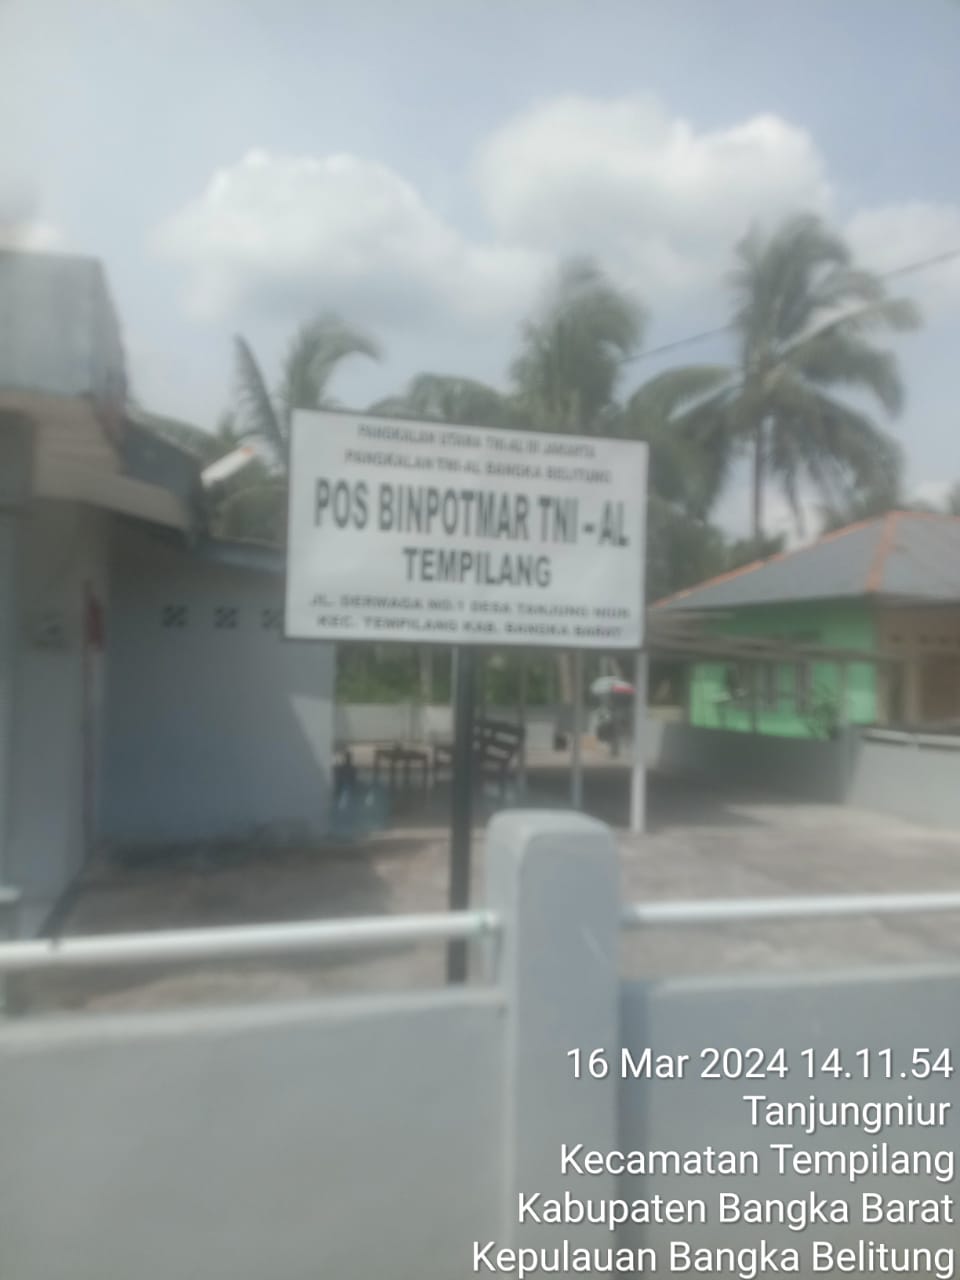 Kantor Penjagaan Pos TNI AL Terlihat Kosong Tanpa Ada Orang Yang Menjaga